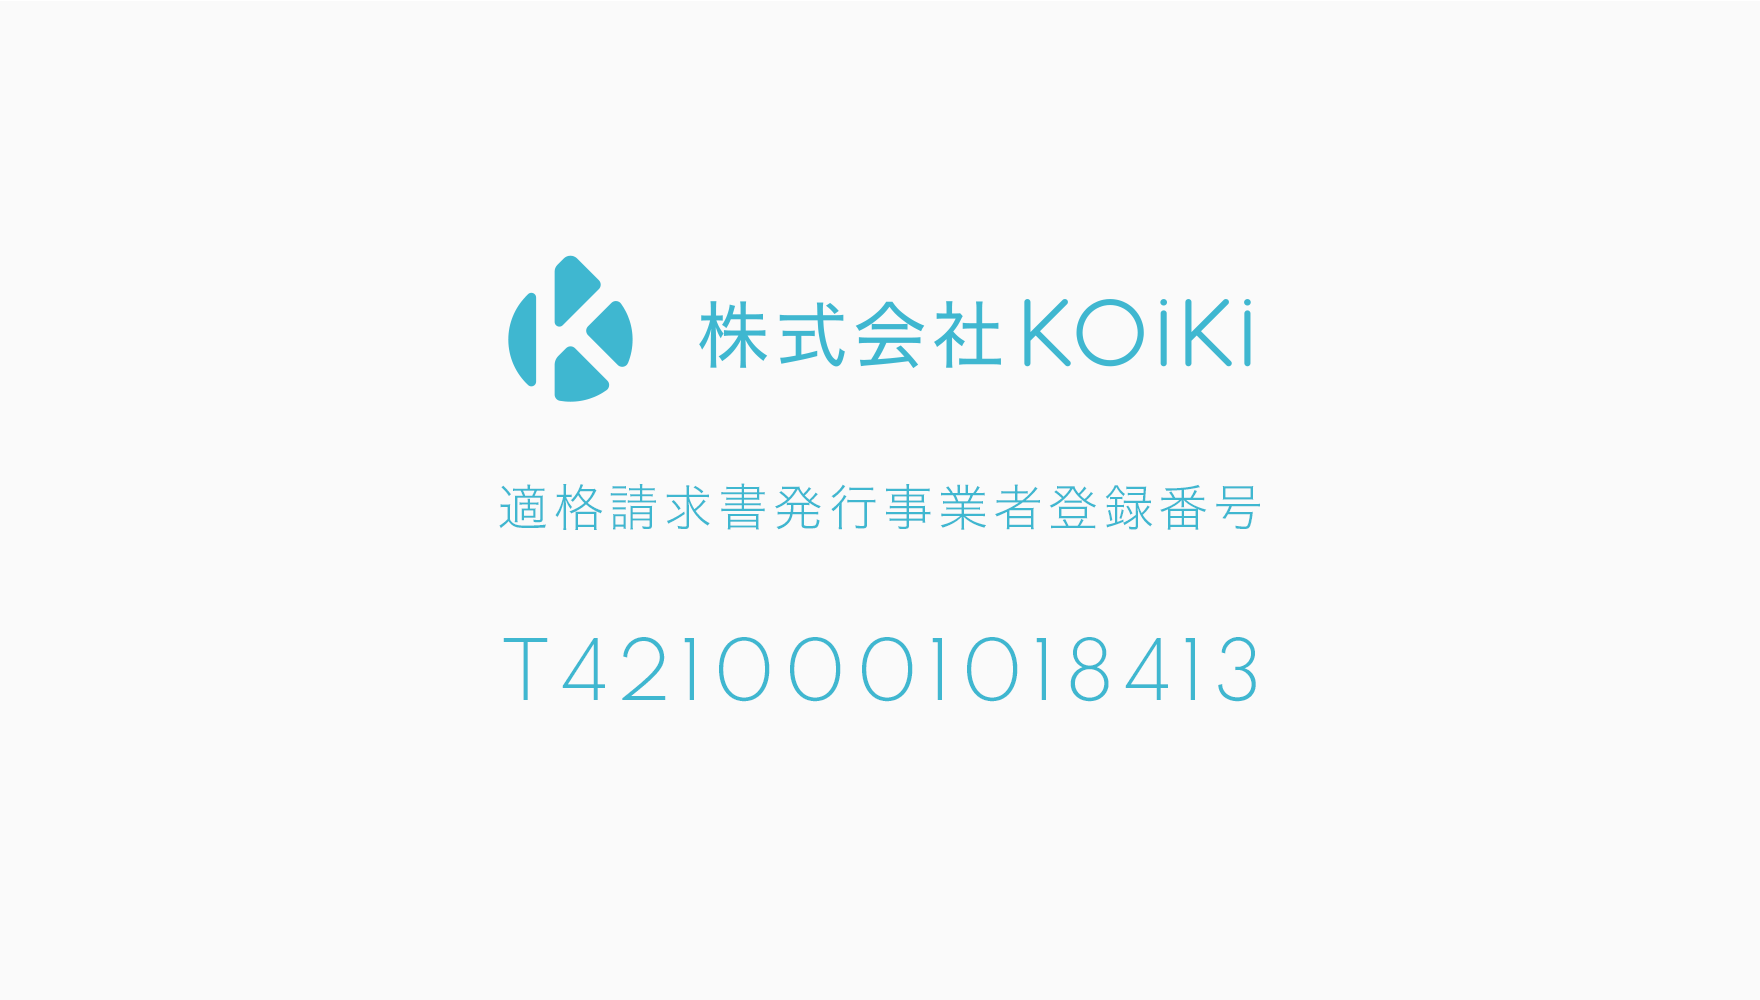 KOiKi 適格請求書発行事業者登録番号(インボイス登録番号) T4210001018413